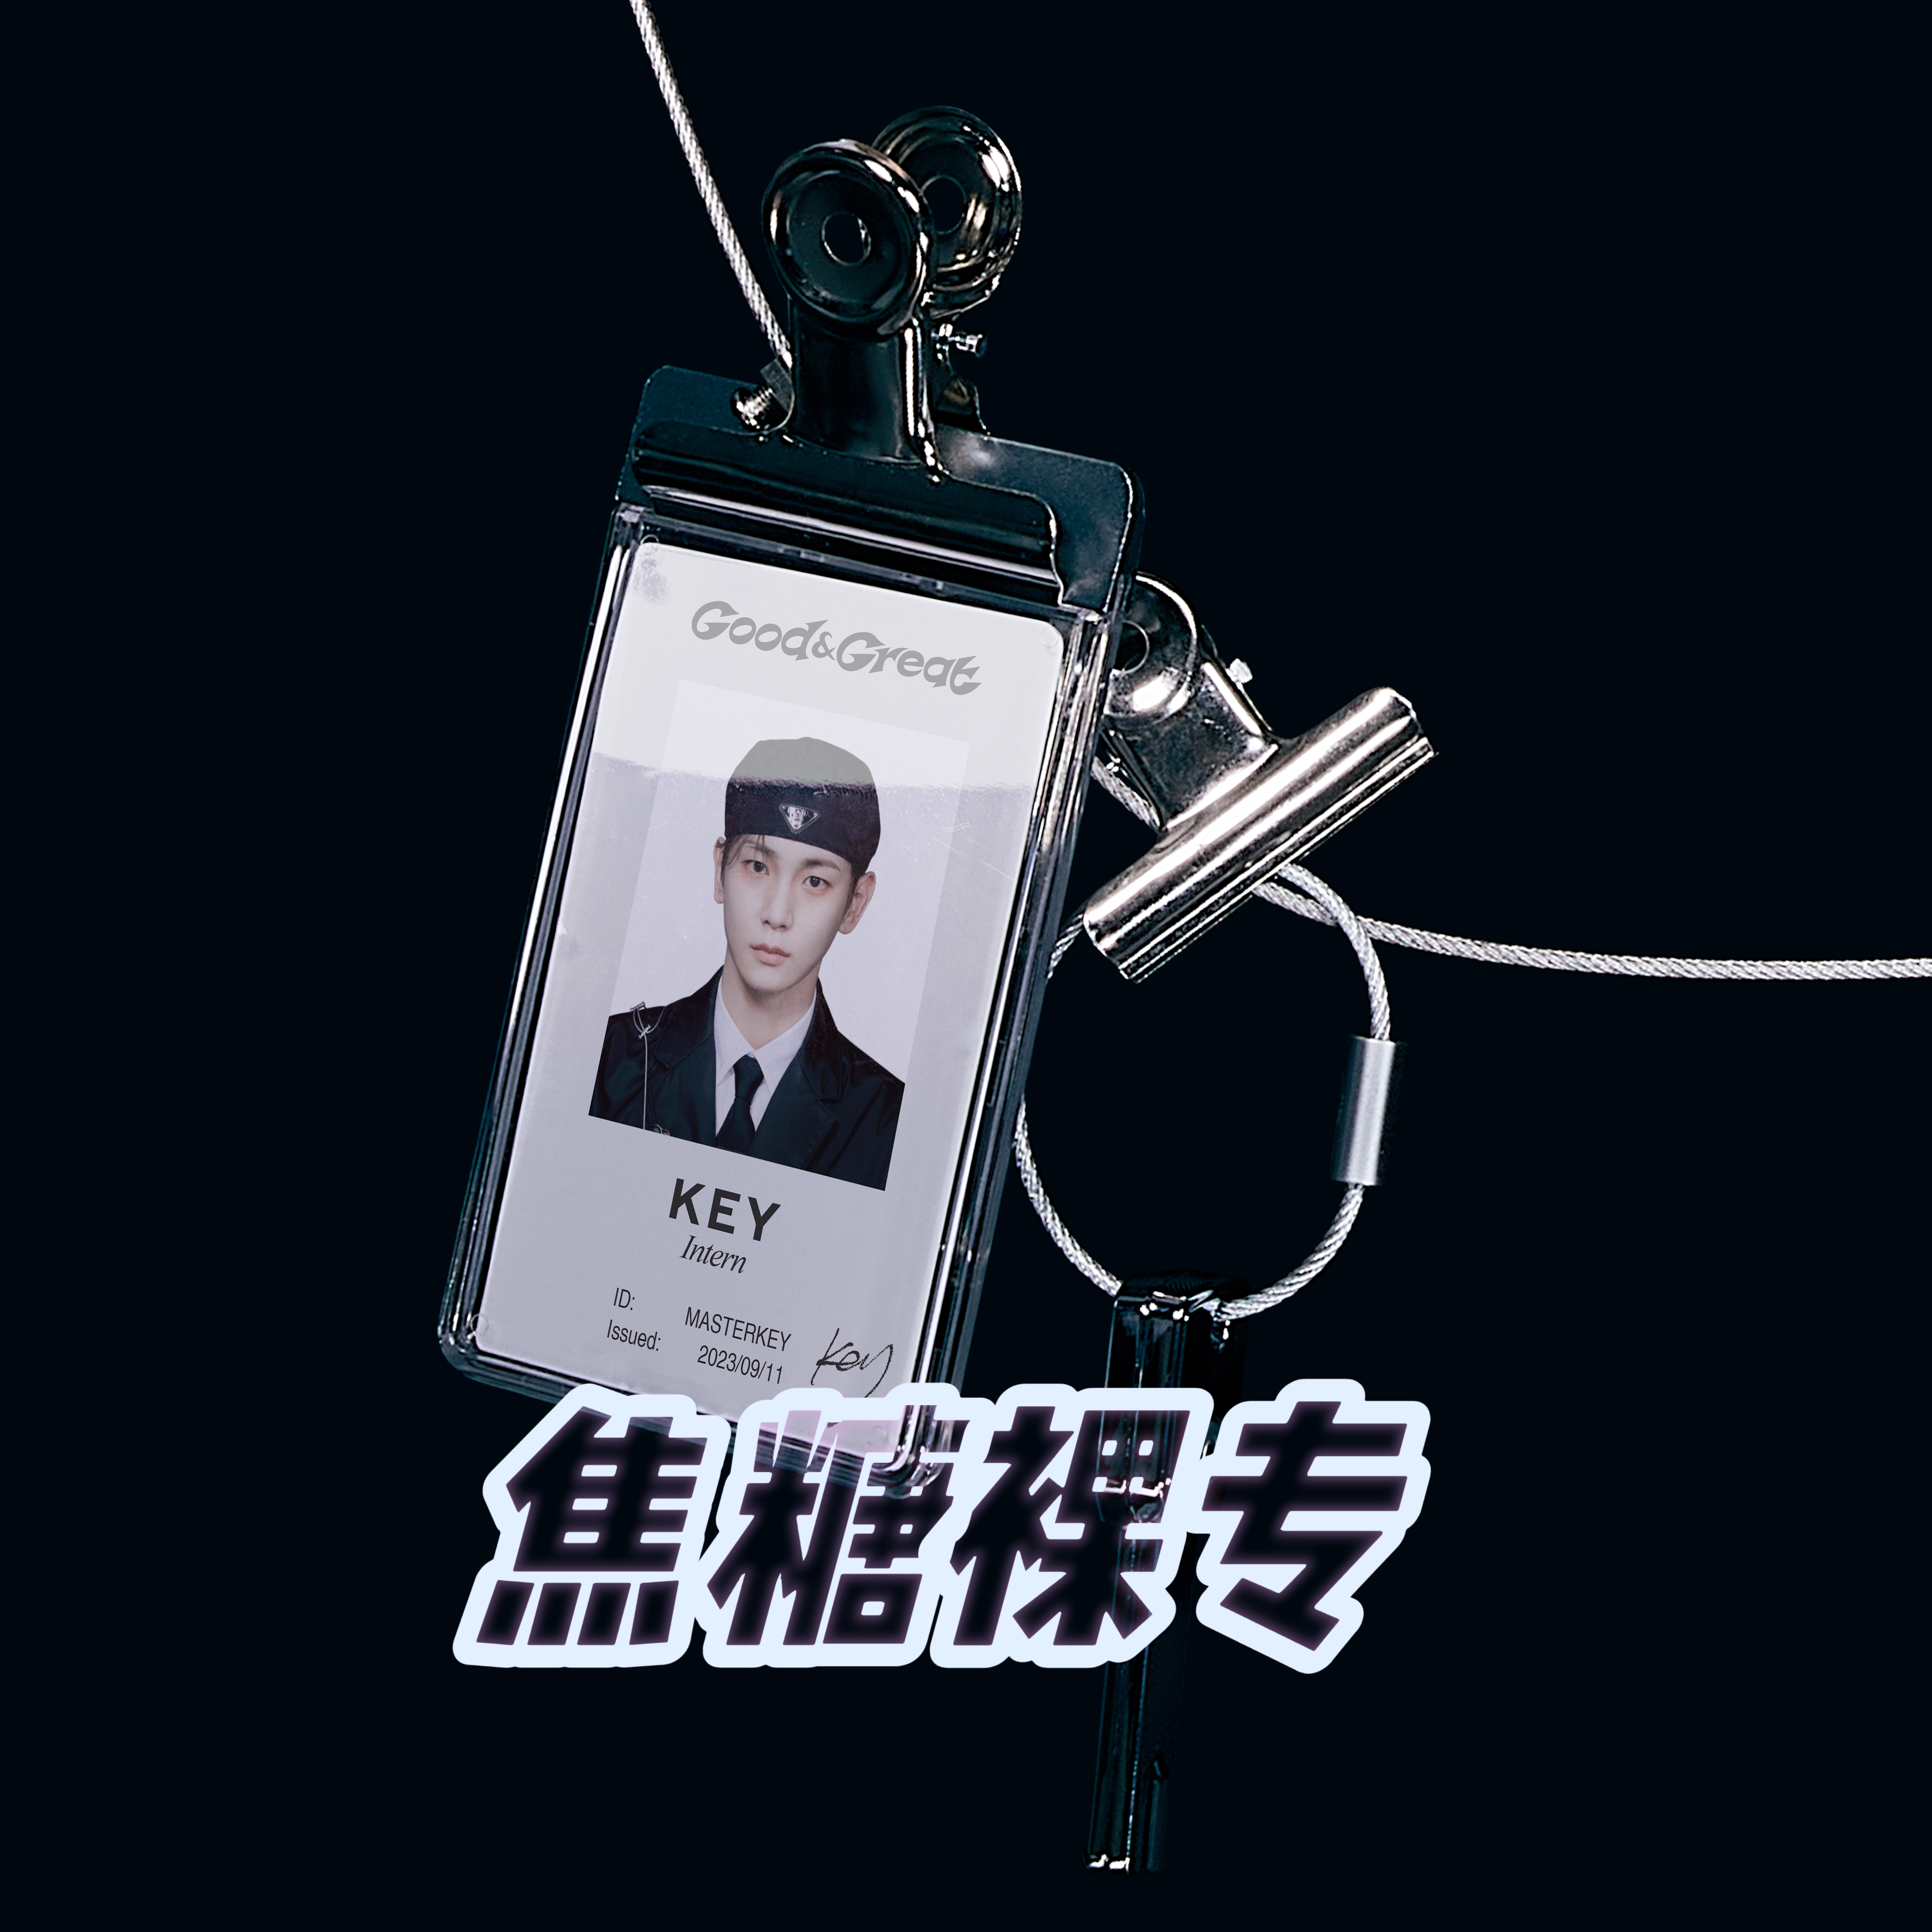 [全款 裸专] [2CD 套装] KEY - 迷你2辑 [Good & Great] (Cover Letter Ver.)_金起范Key焦糖Caramel